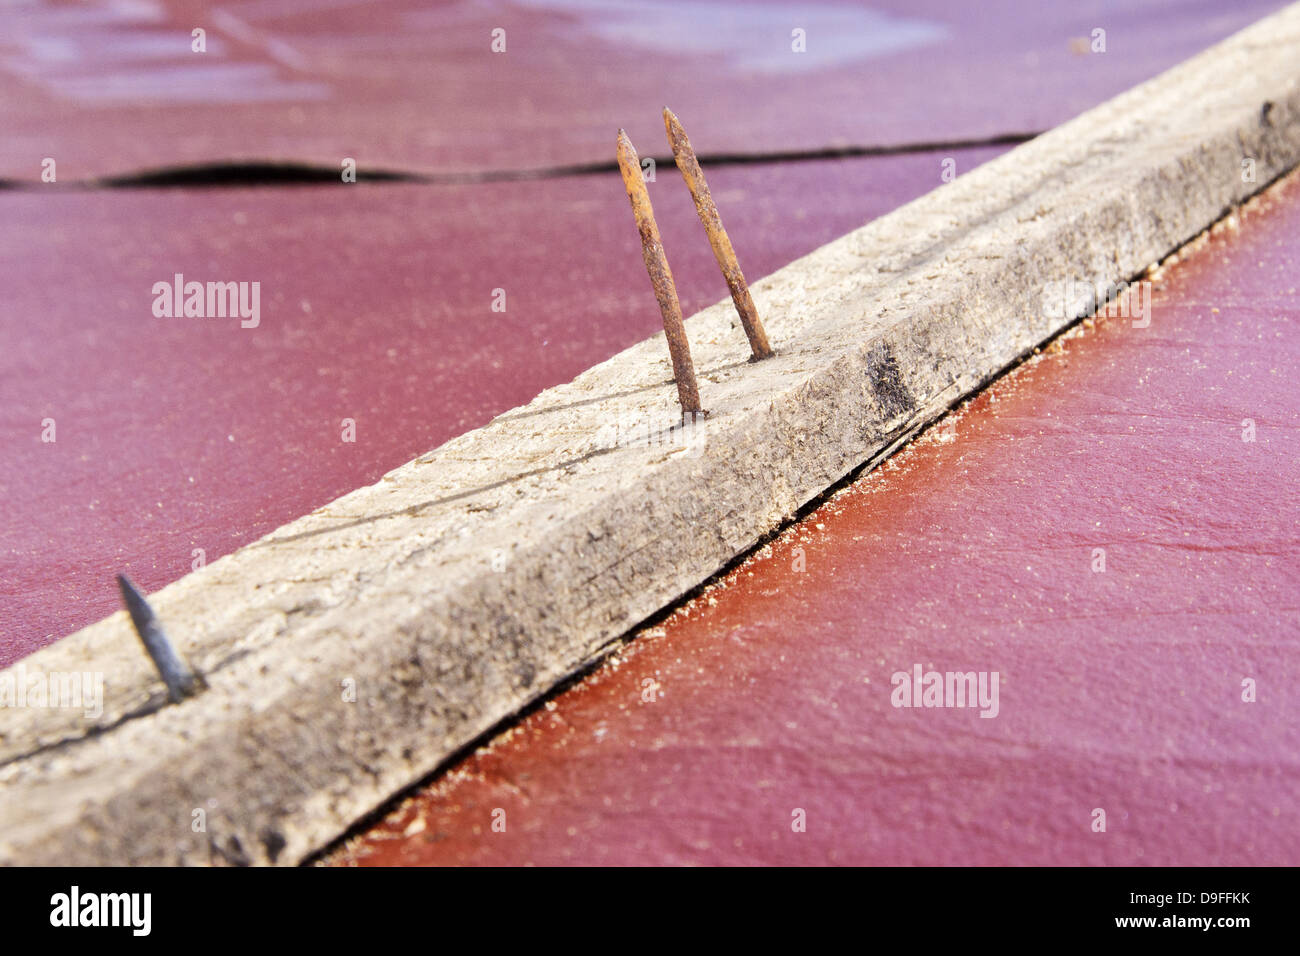 Rostige Naegel in Einer Holzlatte | Rostige Nägel in eine hölzerne Querstange | Stockfoto